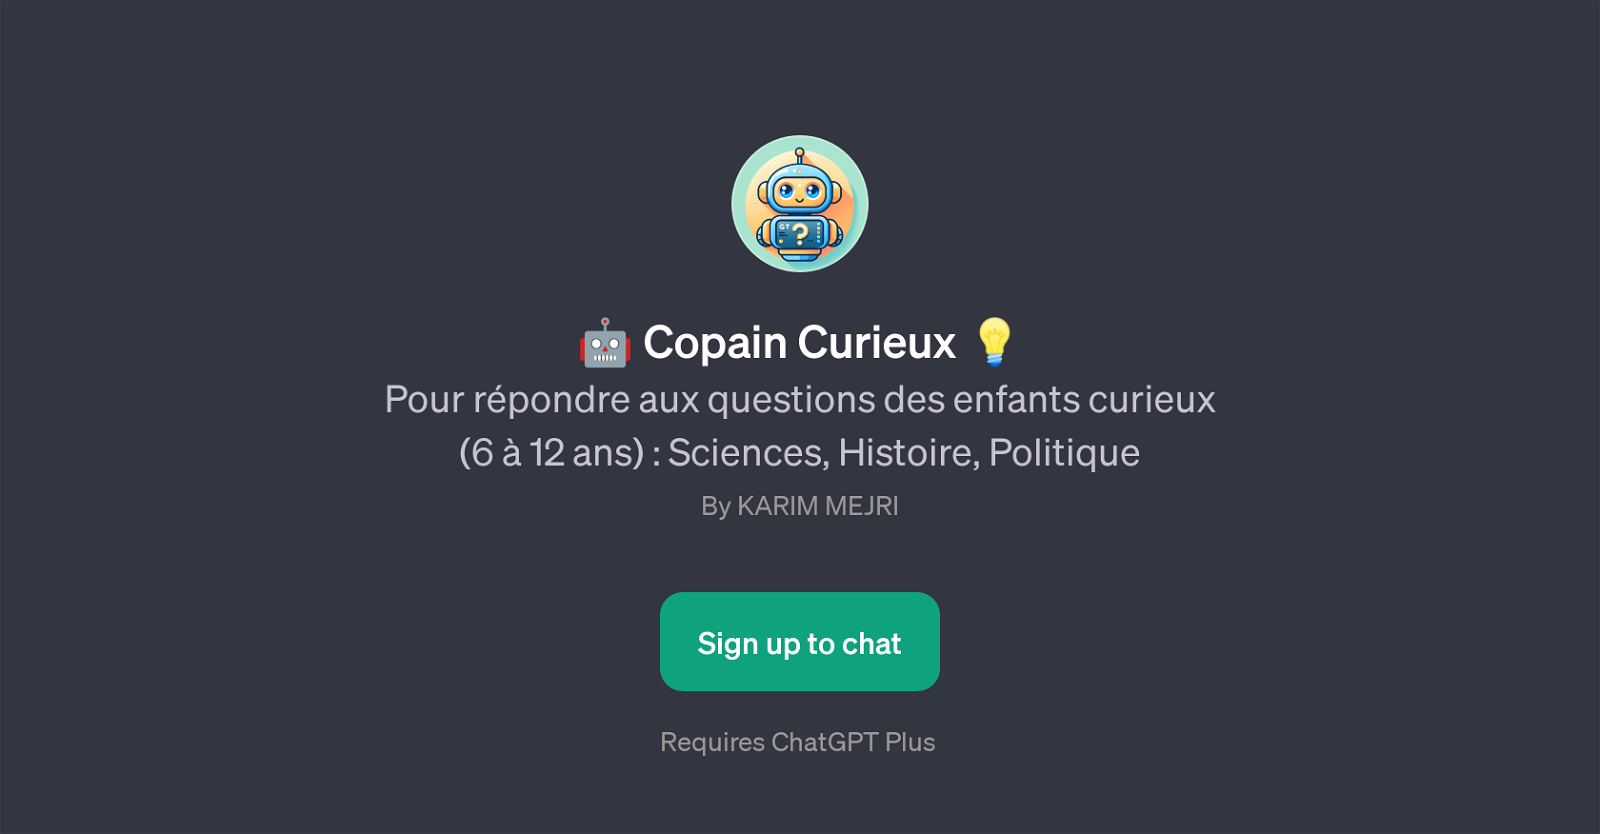 Copain Curieux website